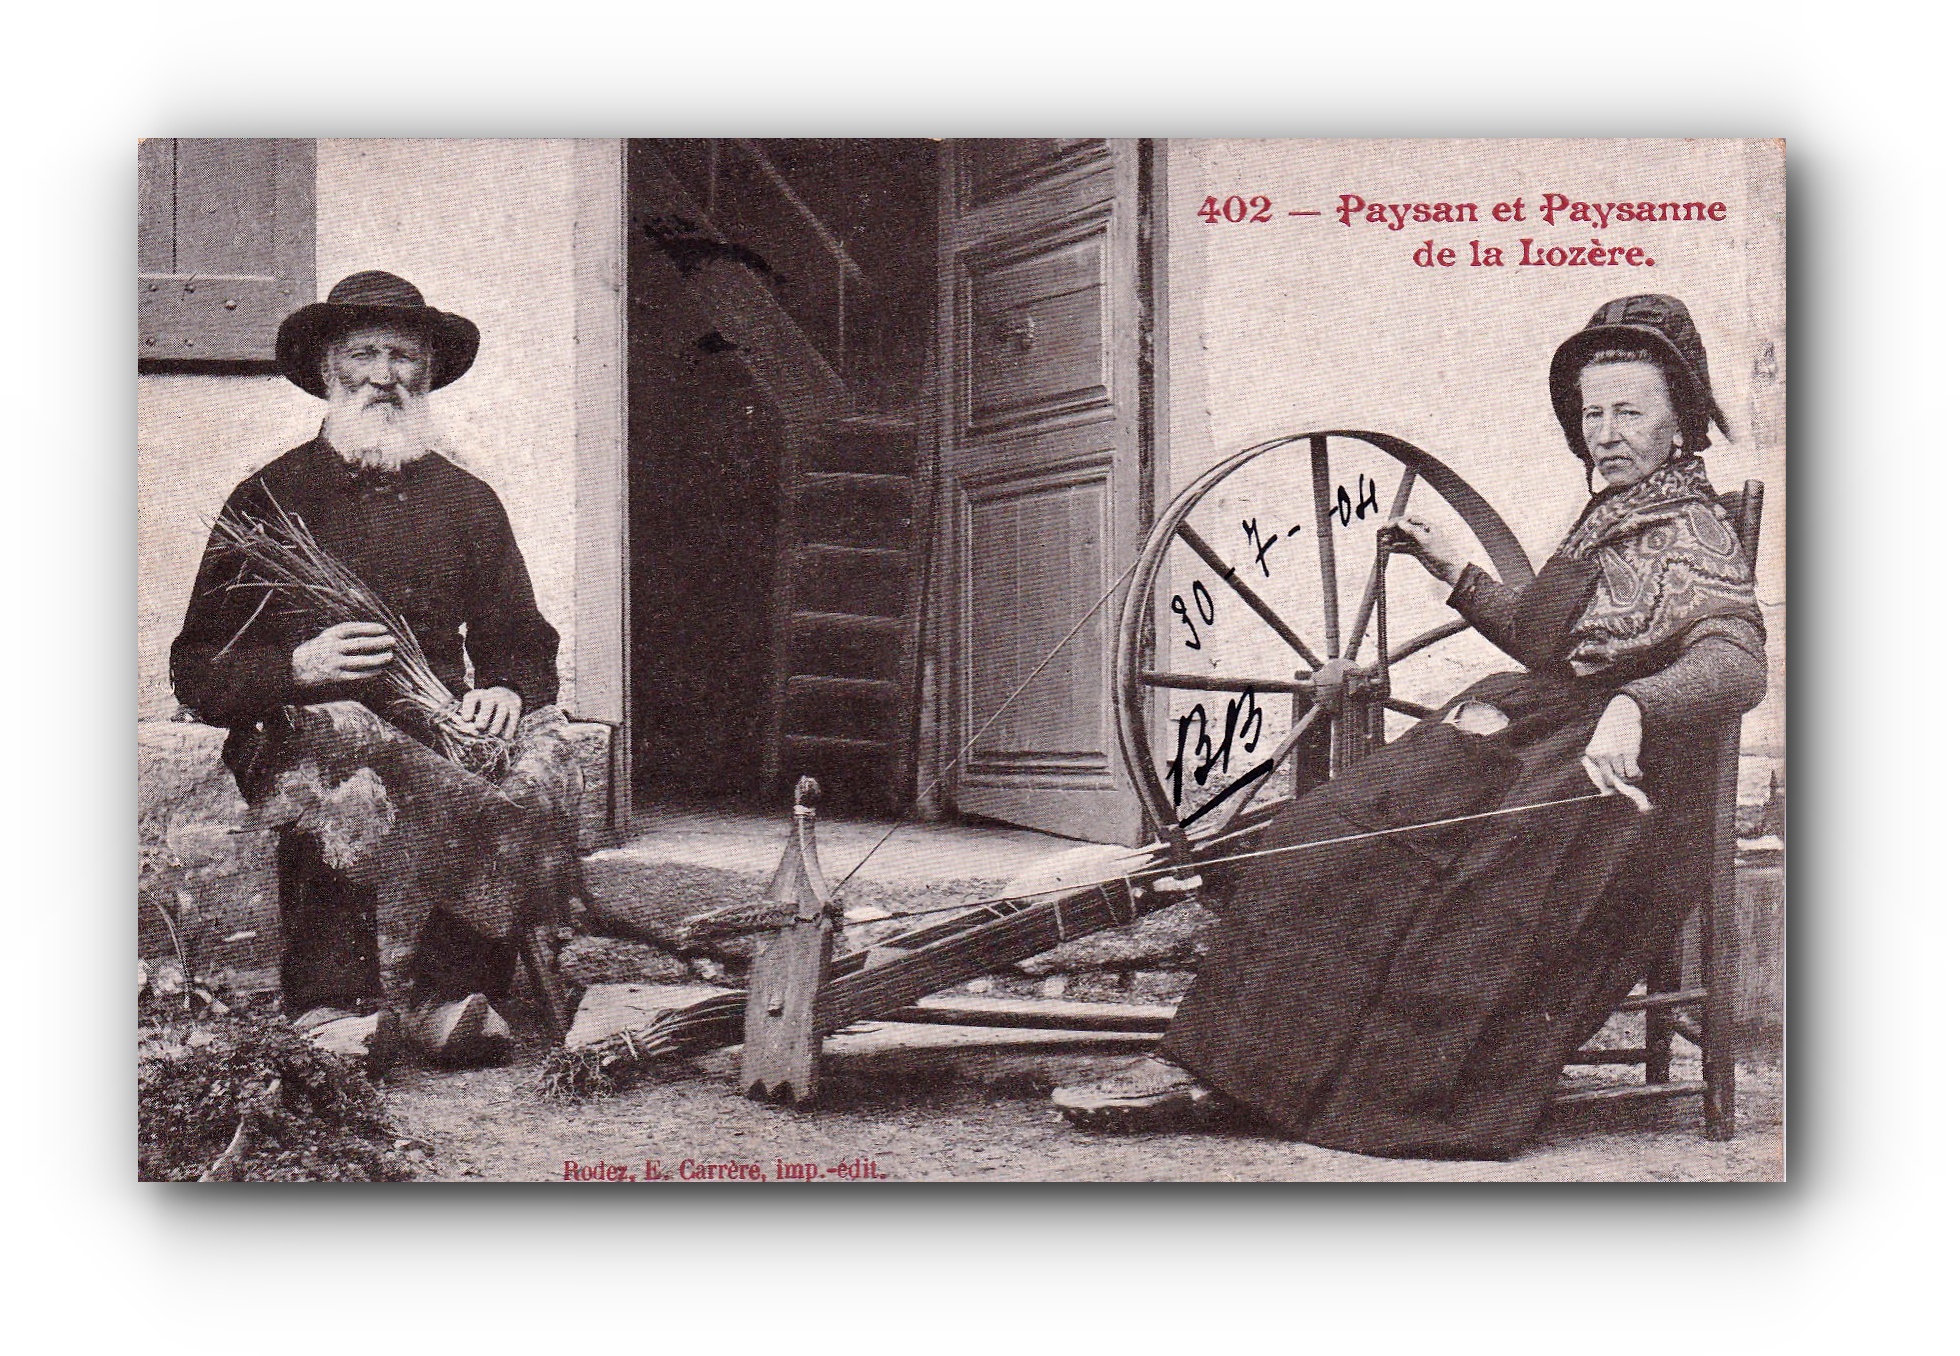 Paysan et Paysanne de la Lozière - 30.07.1904 - Bauer und Bäuerin aus der Lozière - Farmer and farmer's wife from the Lozière